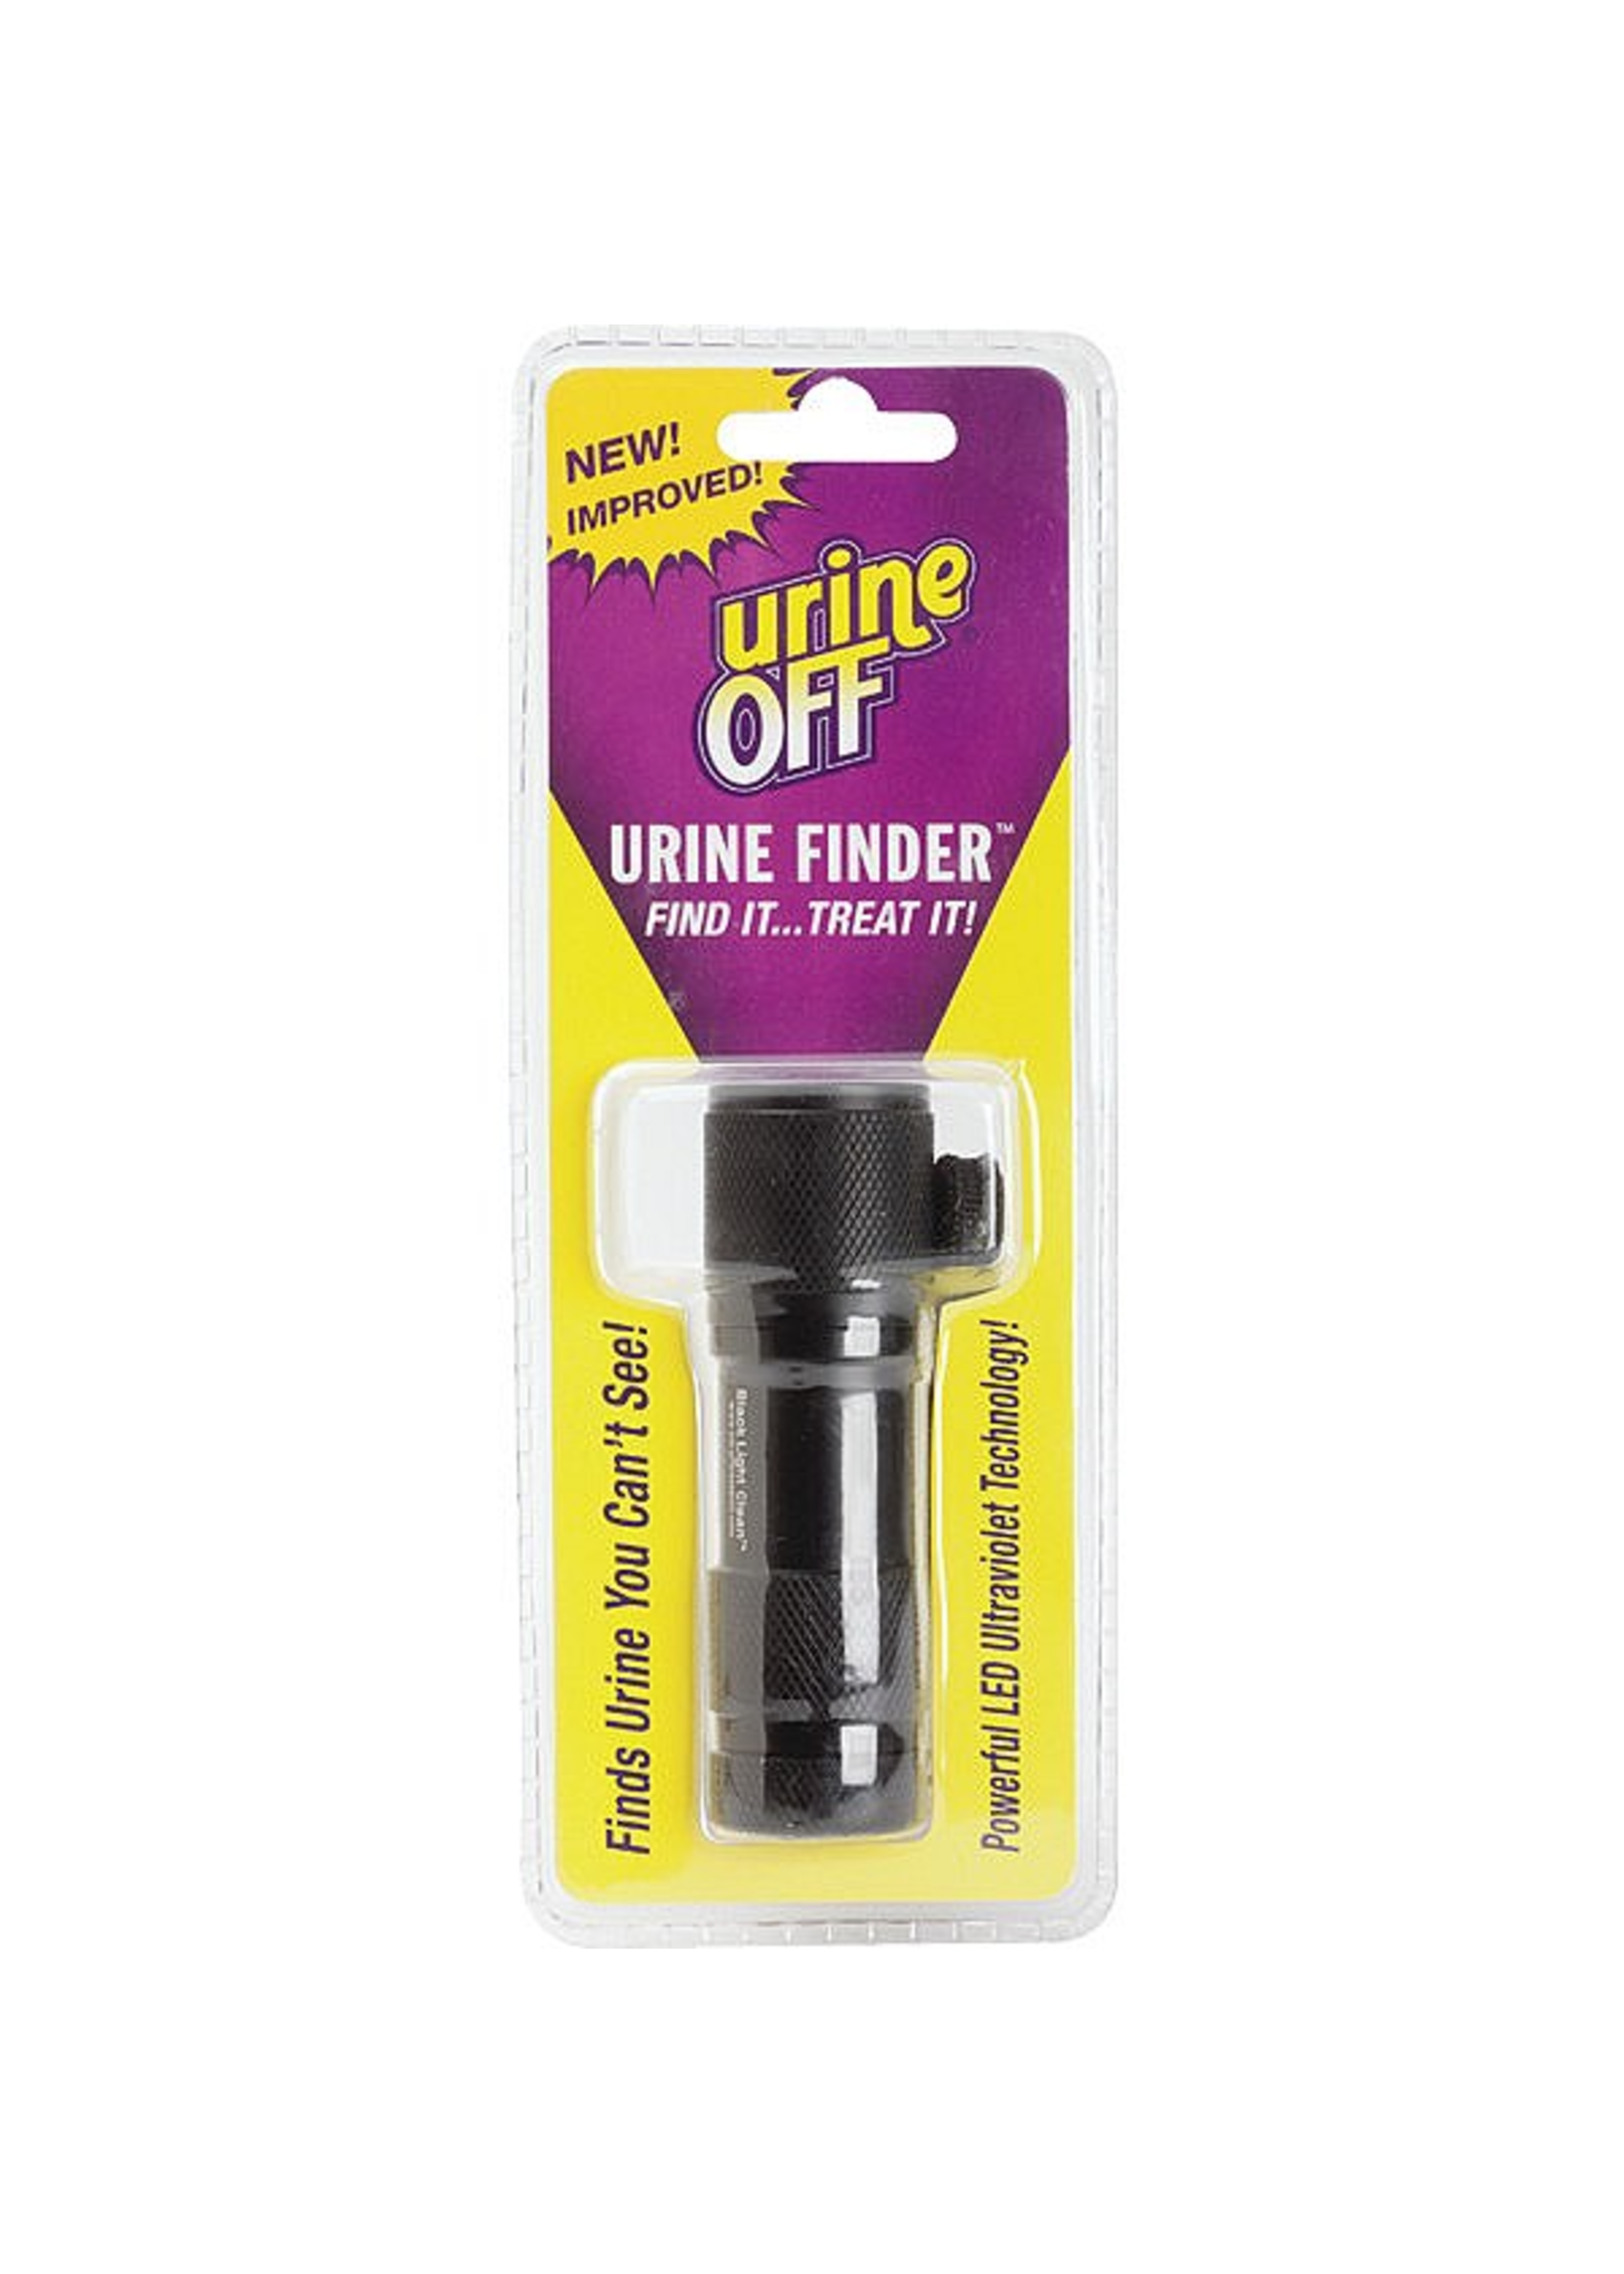 Urine Off Urine Off Urine Finder Light